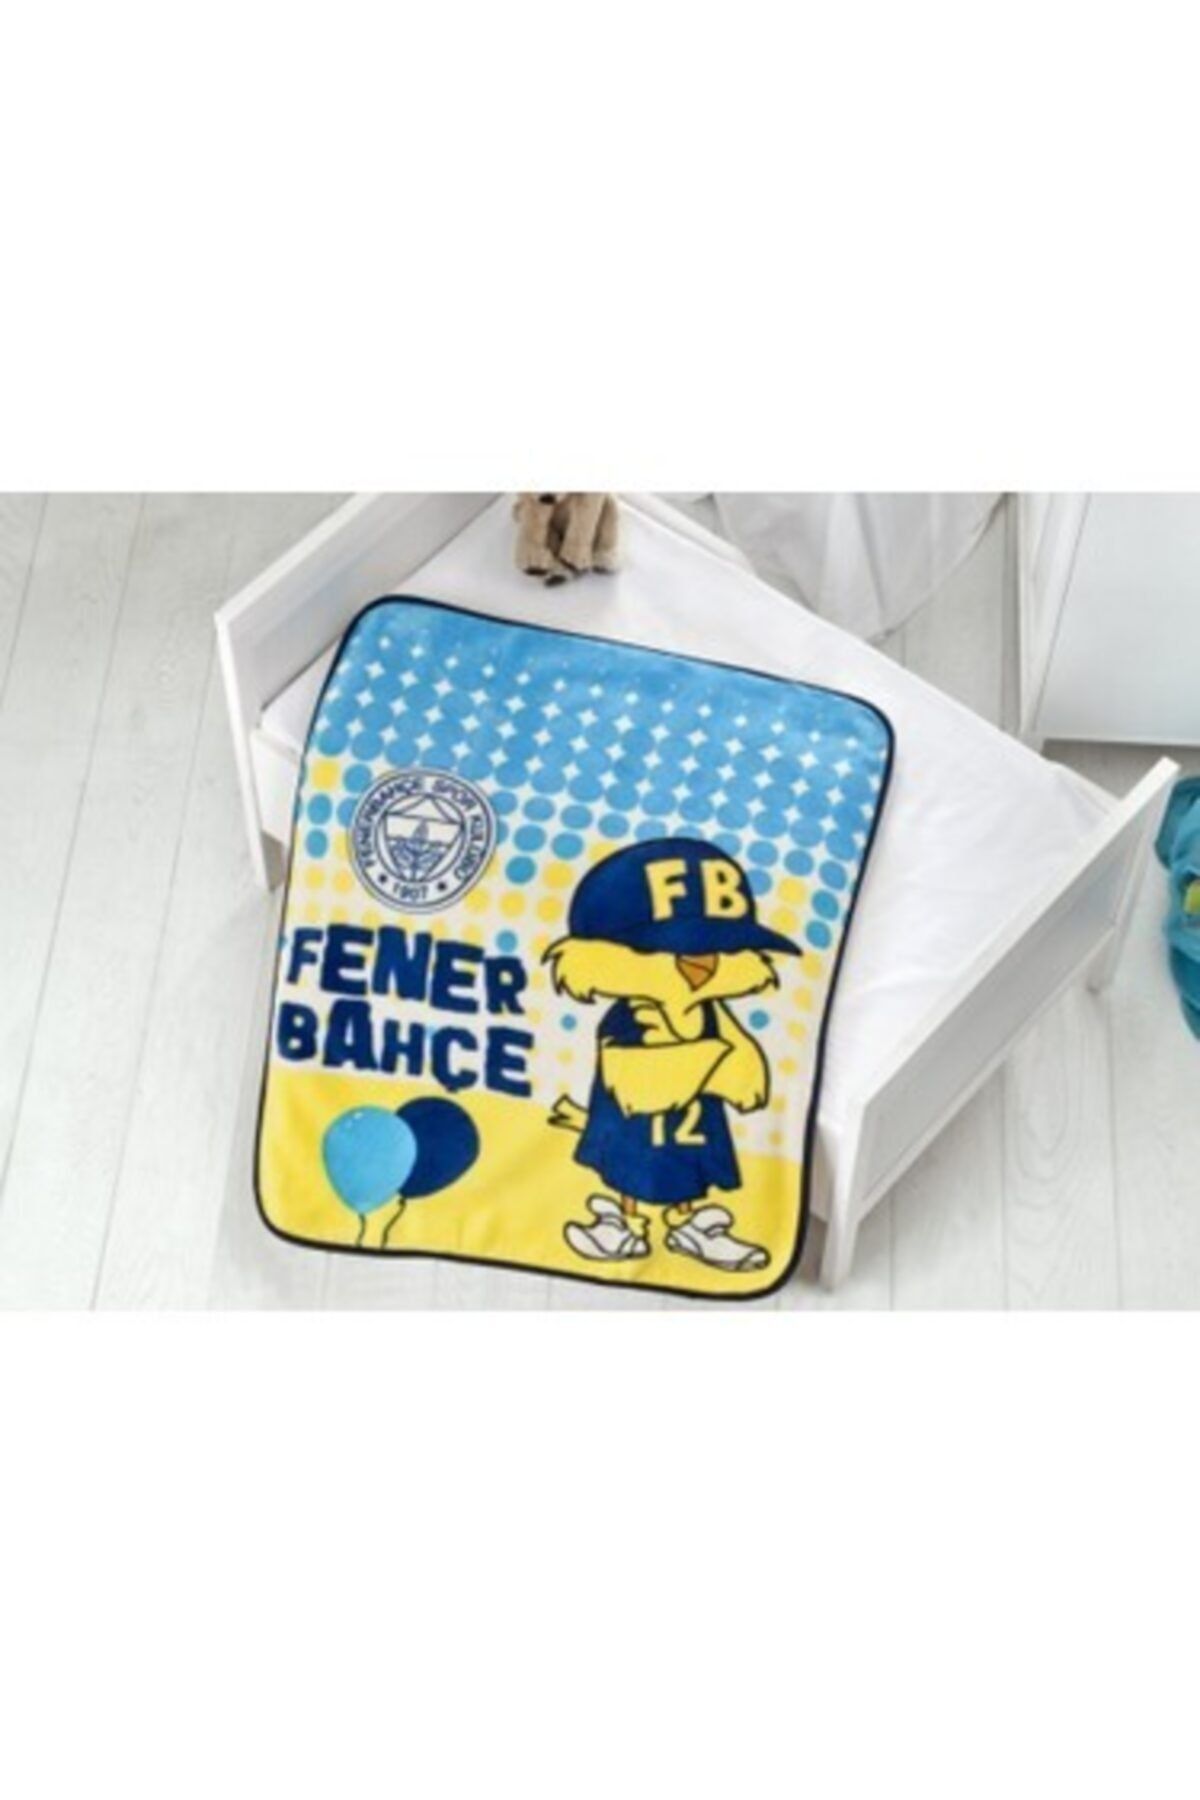 Fenerbahçe Lisanslı Fenerbahçe Bebek Battaniyesi Fenerbahçe Bebek Balon 100 x 120 cm